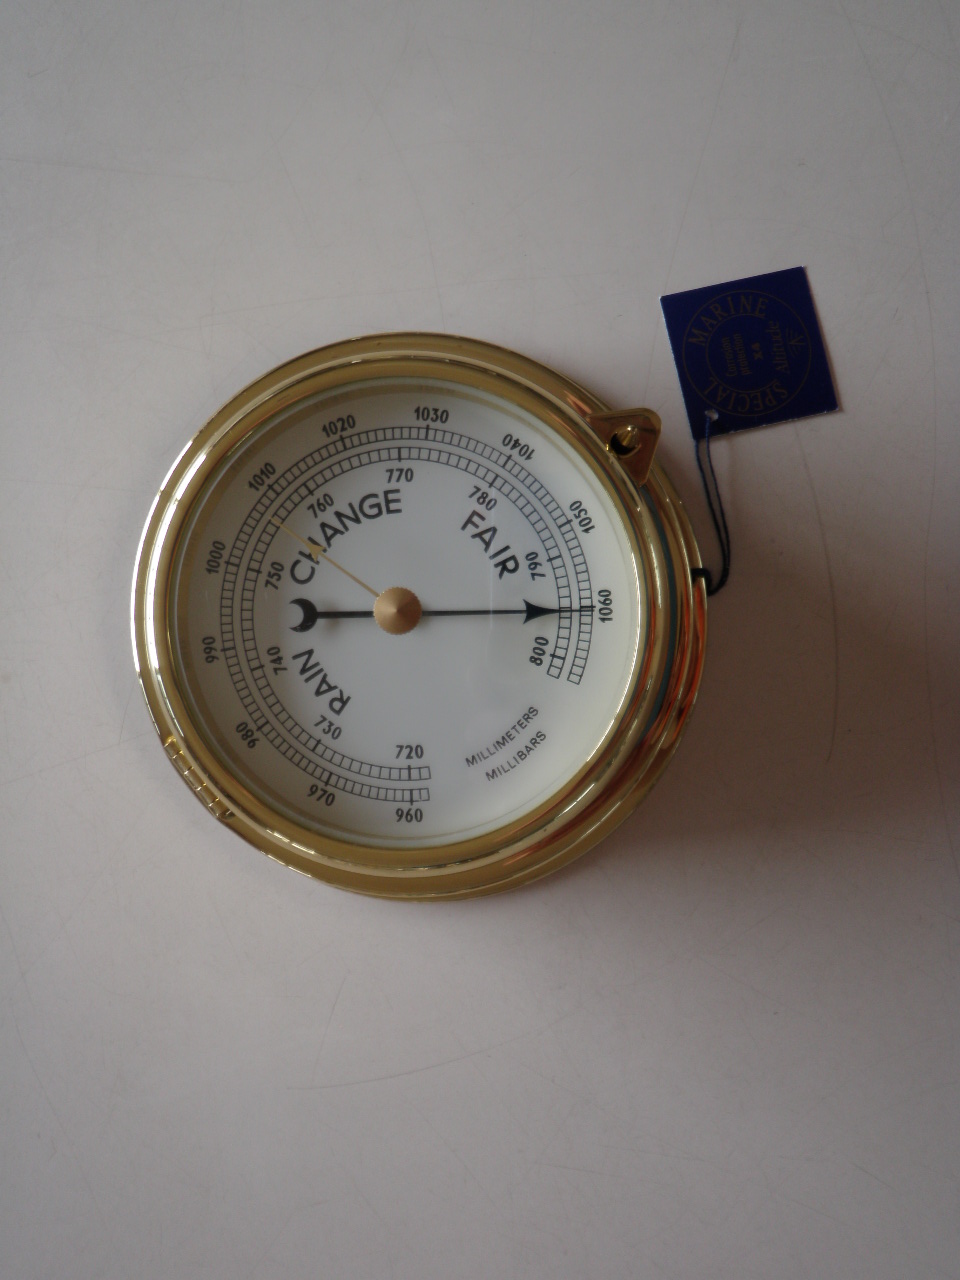 バロメーター（気圧計）